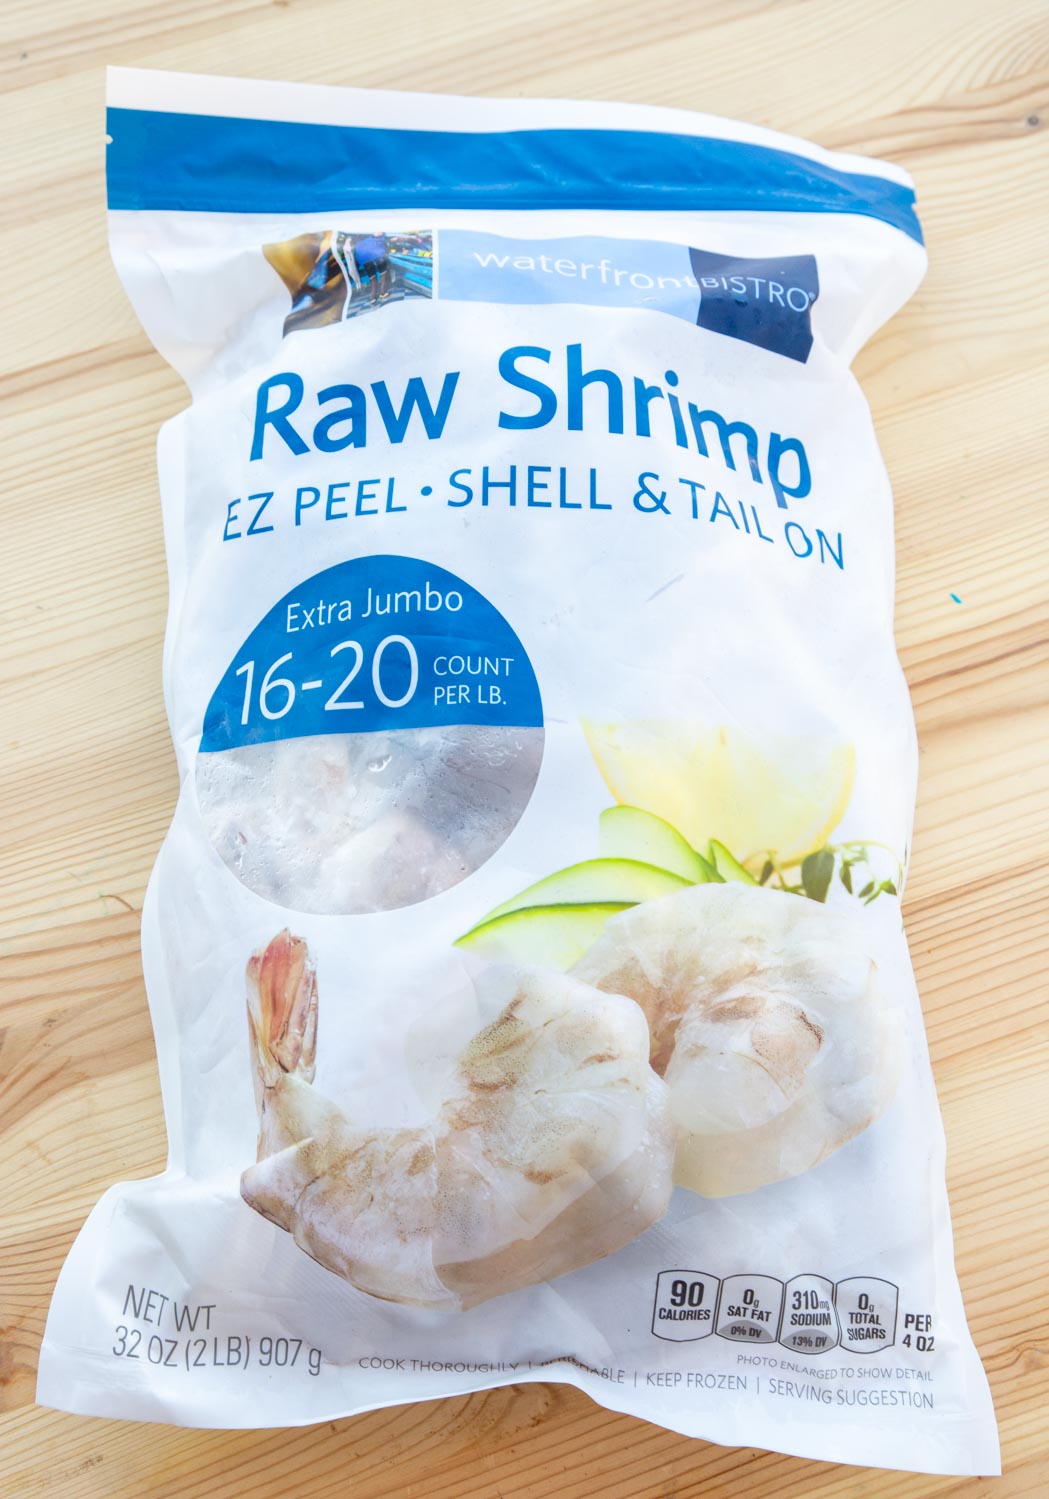 A bag of frozen shrimp